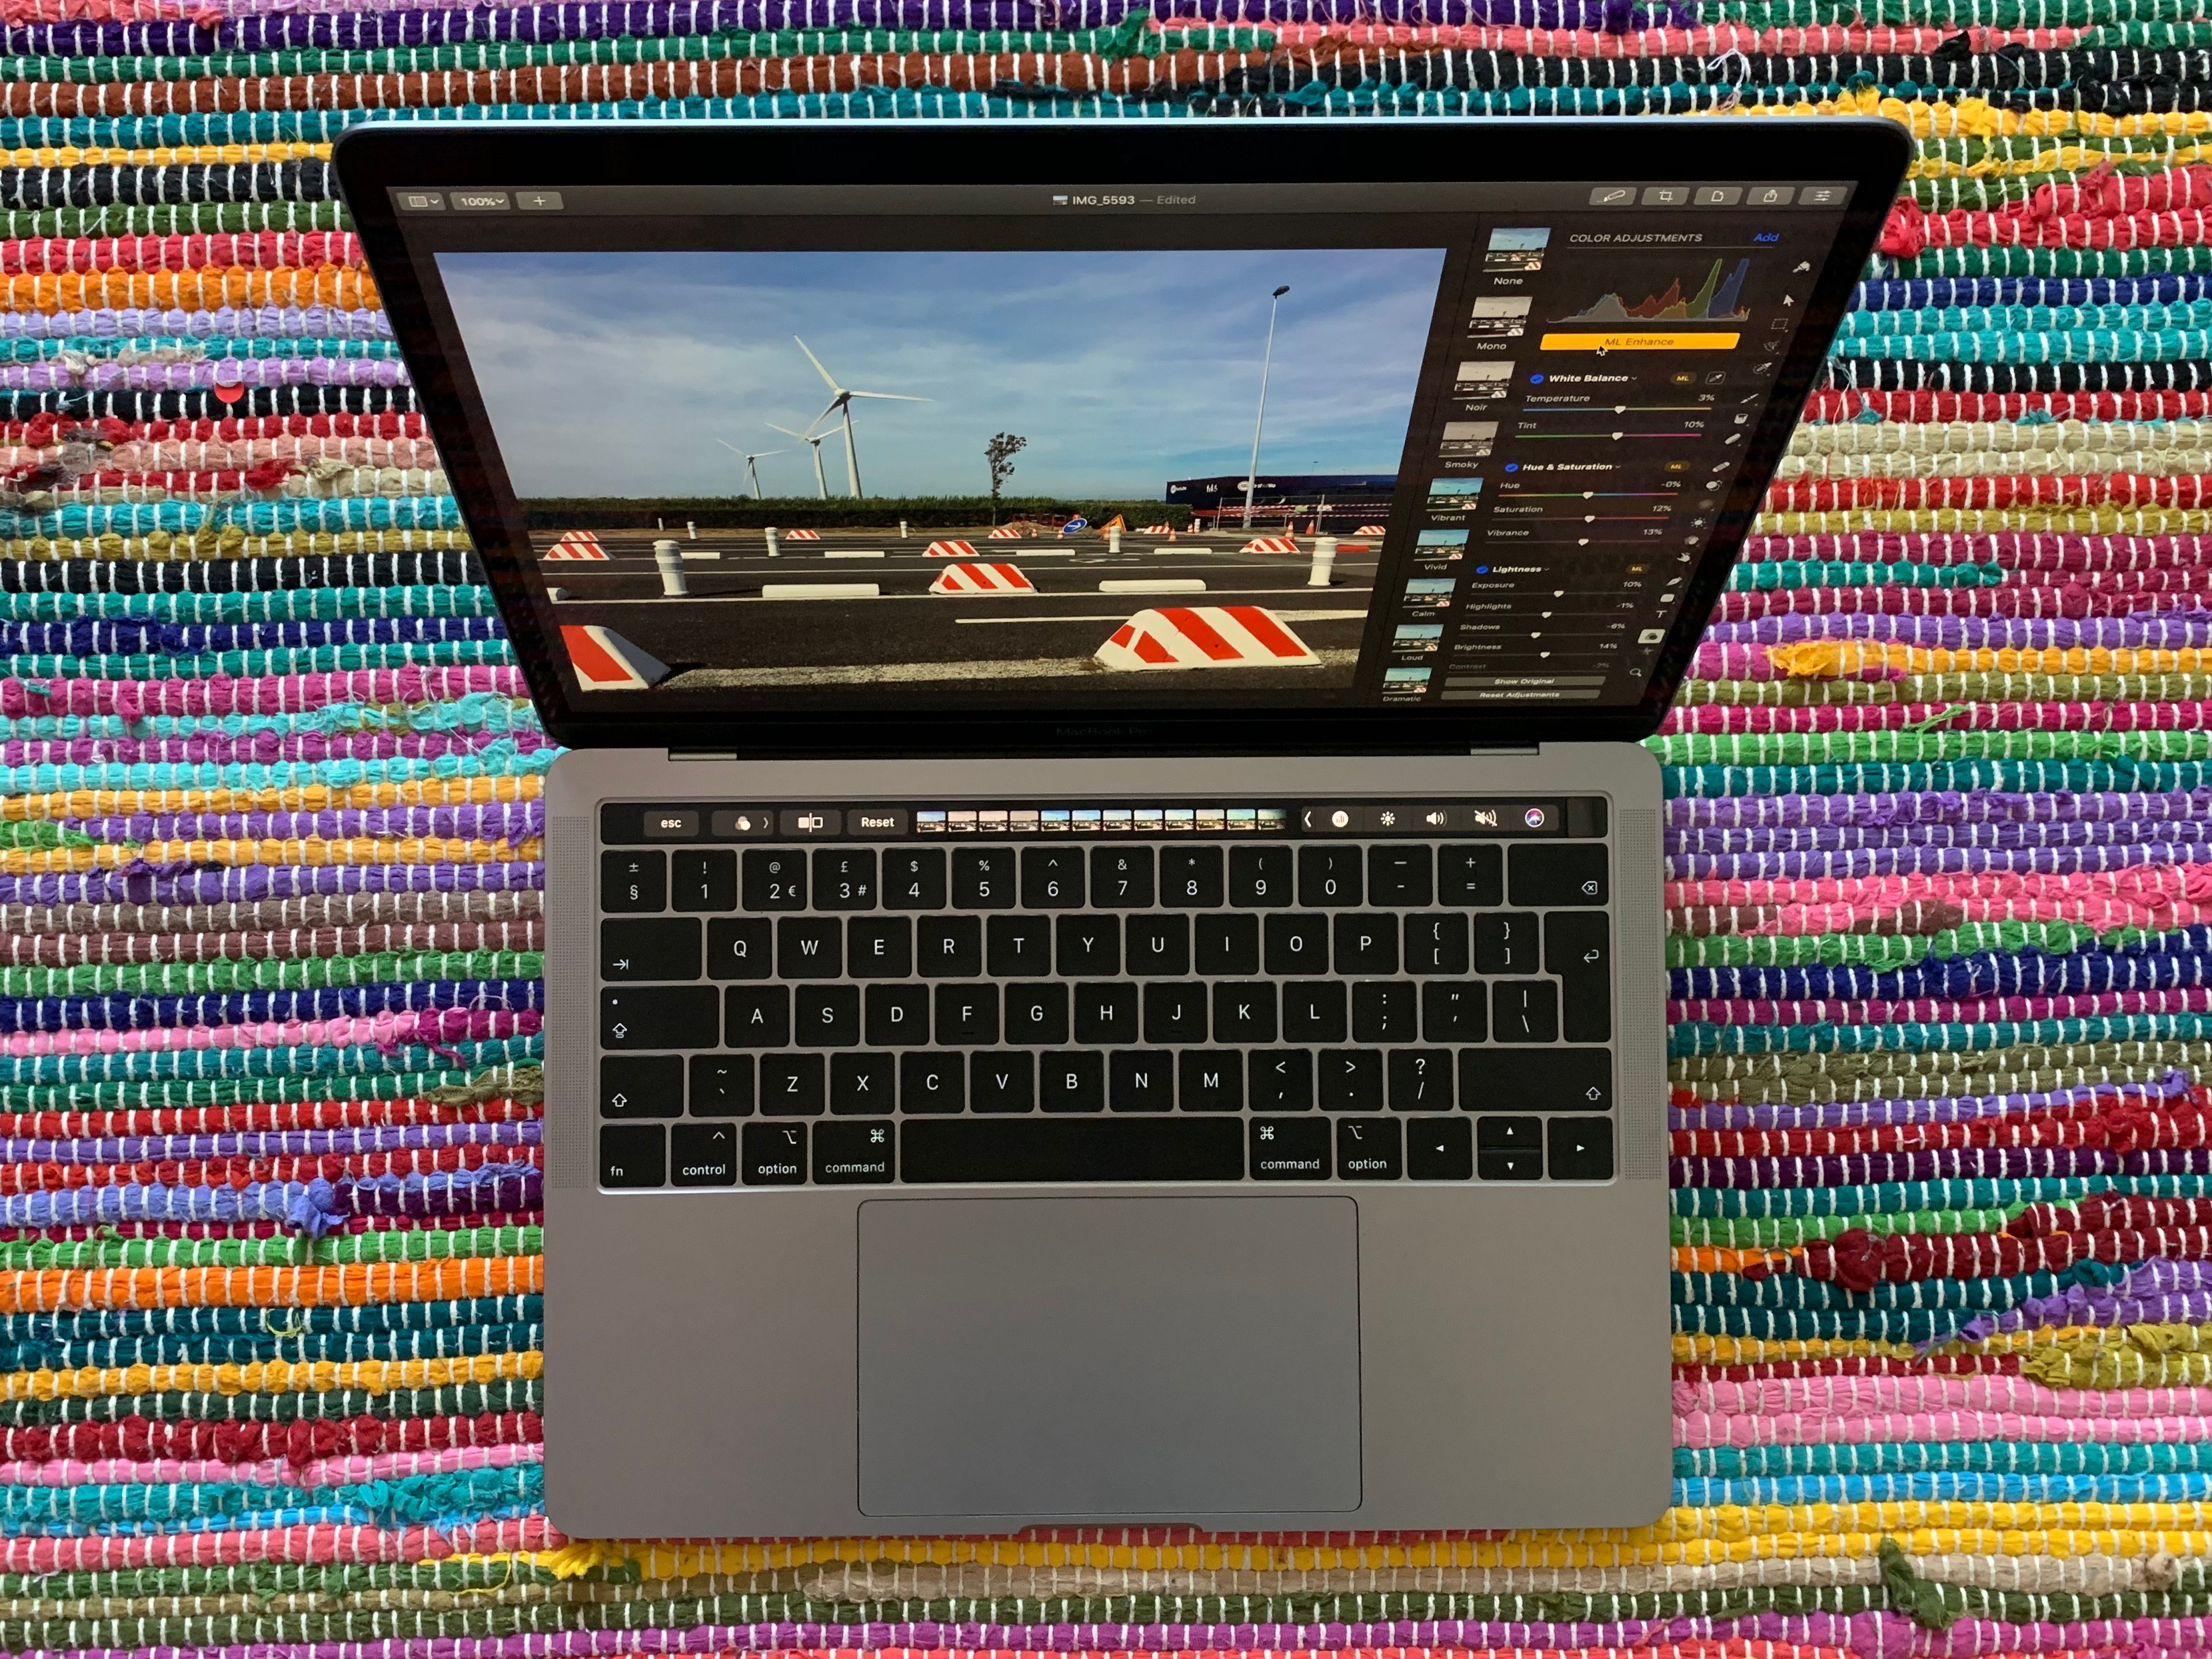 Mac Book Pro 13 inch 2019